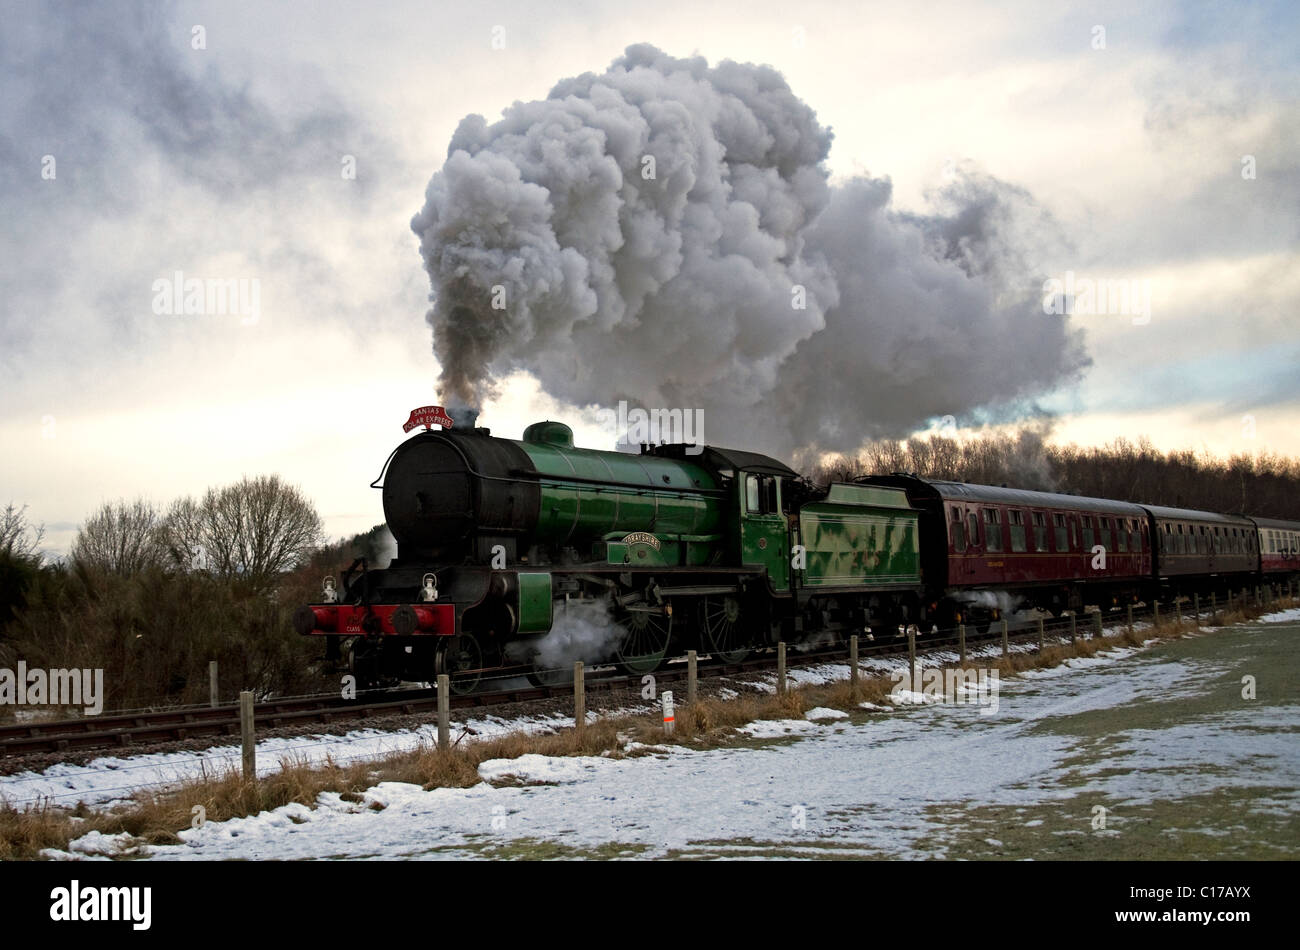 Santa's Polar Express train à vapeur Bo'ness West Lothian en Écosse Angleterre Europe Banque D'Images